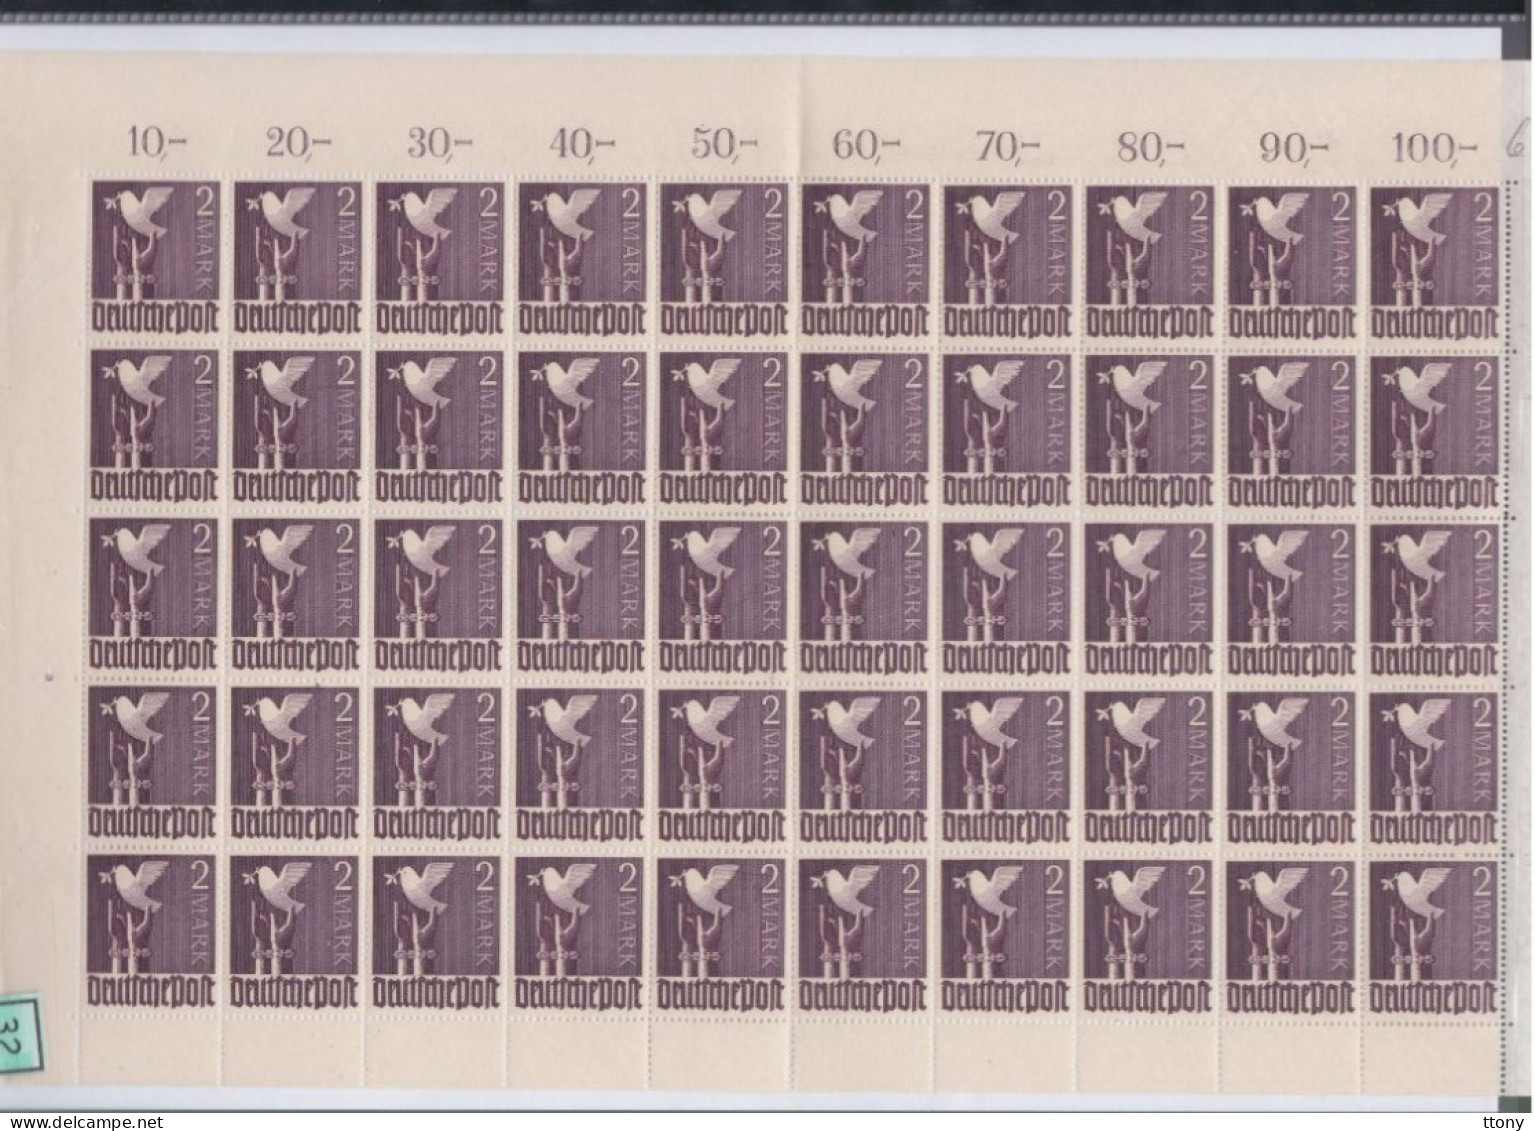 Une Feuille Entière  50 Timbres   2 Mark **   Allemagne  Occupation Alliée  Zone Interalliée AAS  Deutsche Post  960 - Mint